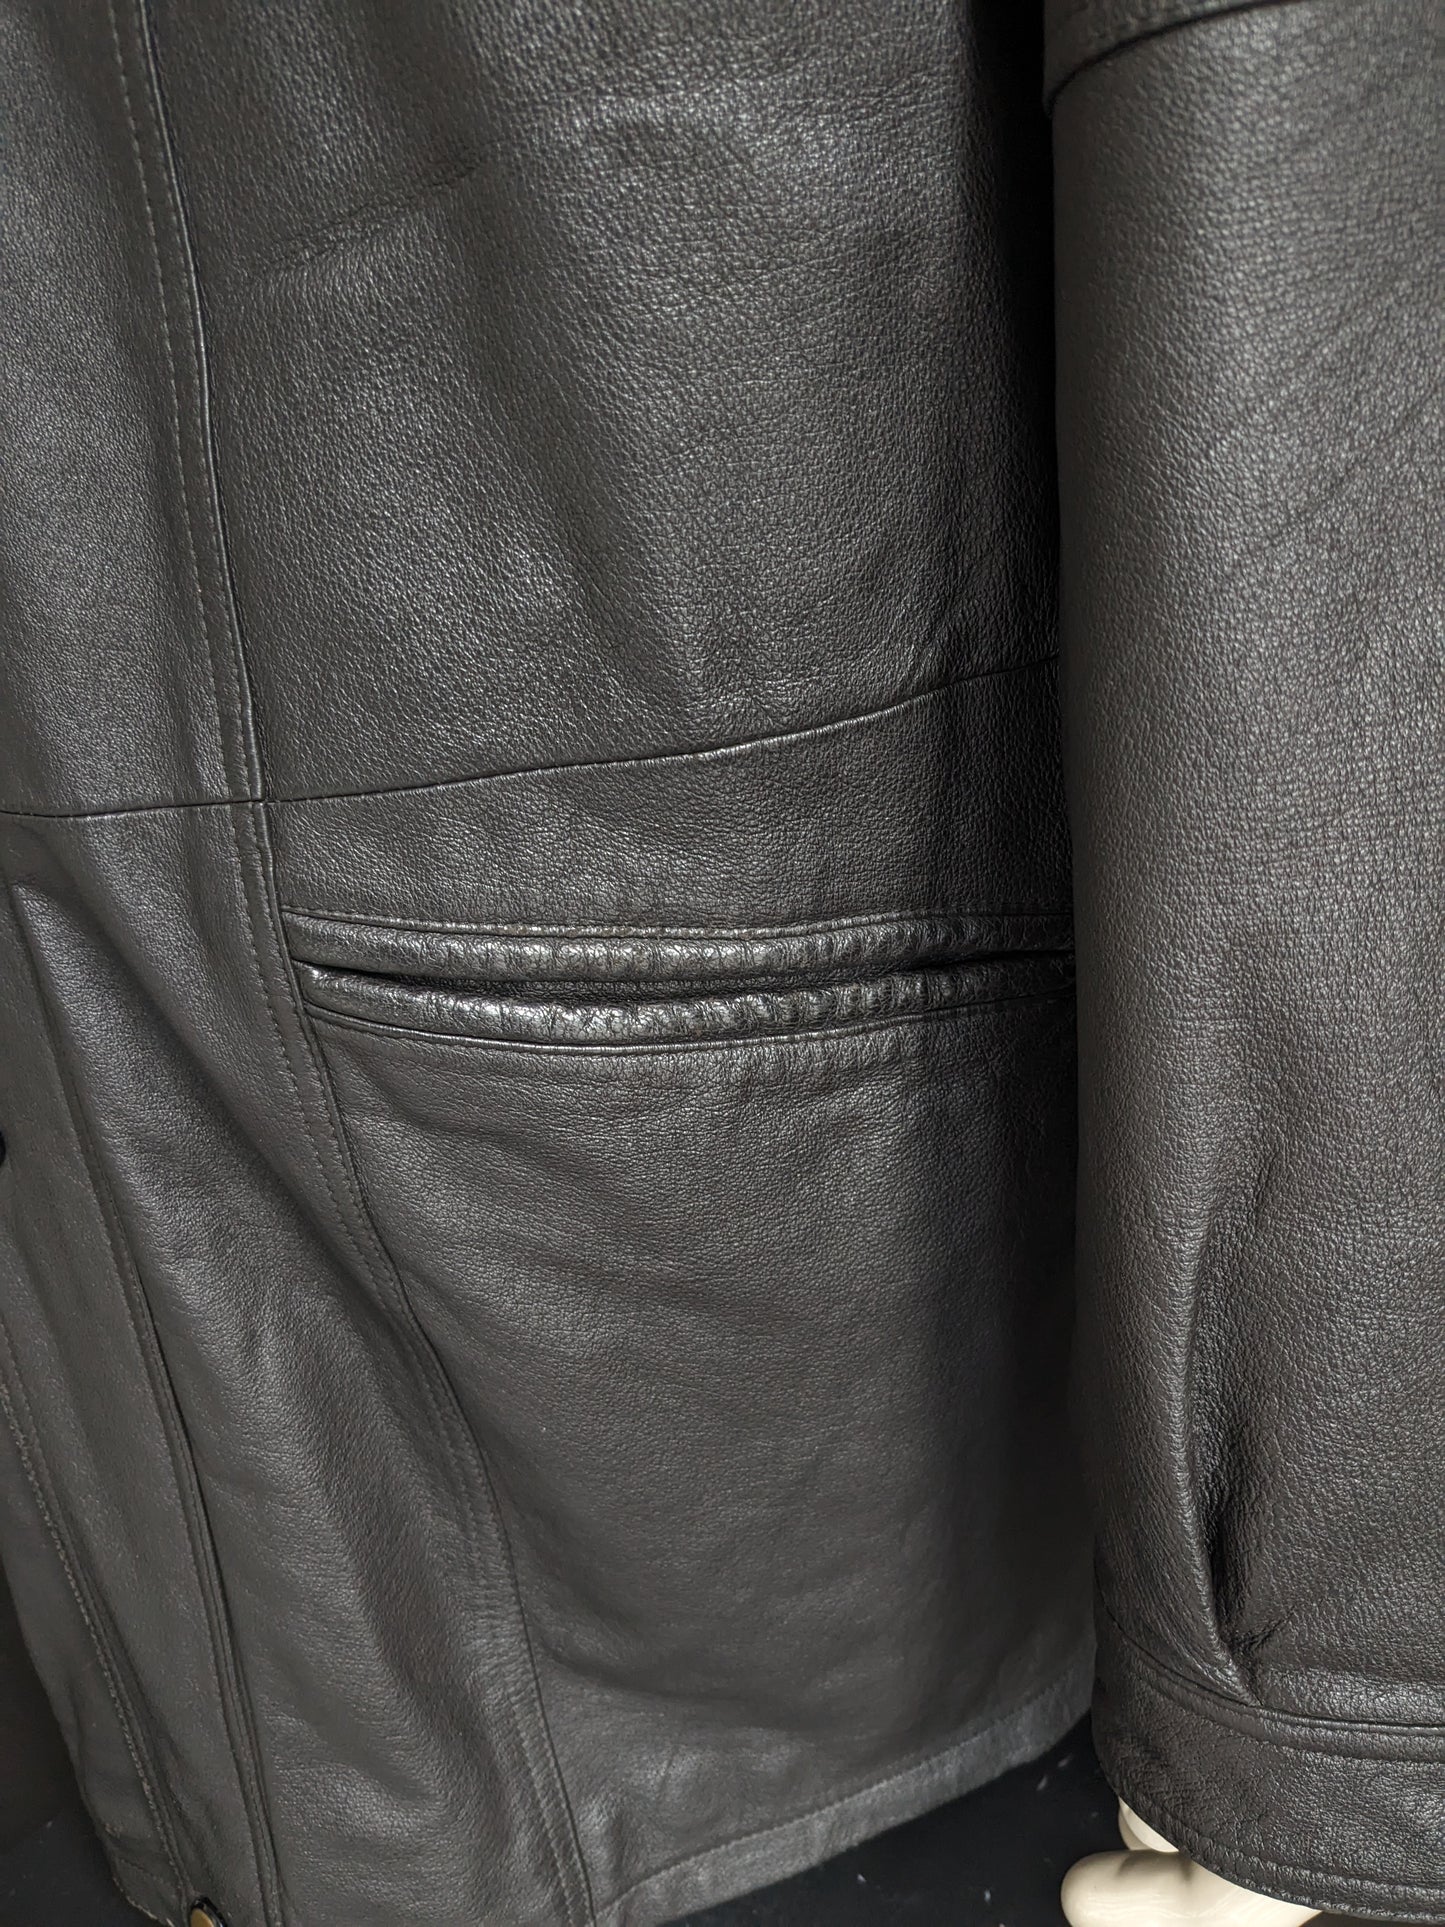 Varkensleren halflange winter jas. Donker Bruin gekleurd met dubbele sluiting. Maat 60 / 2XL-3XL.